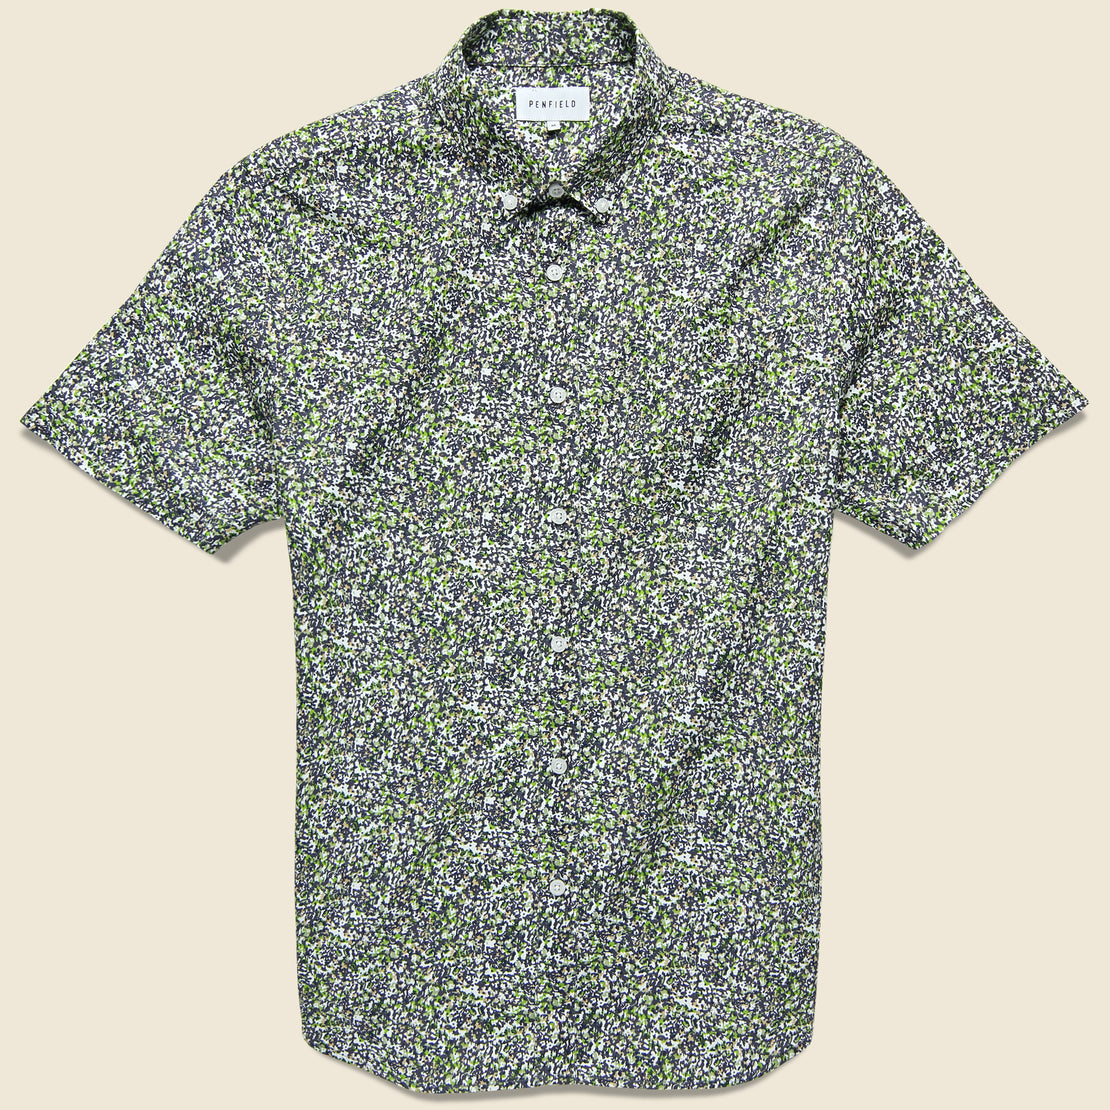 Penfield Tomah Shirt - Green